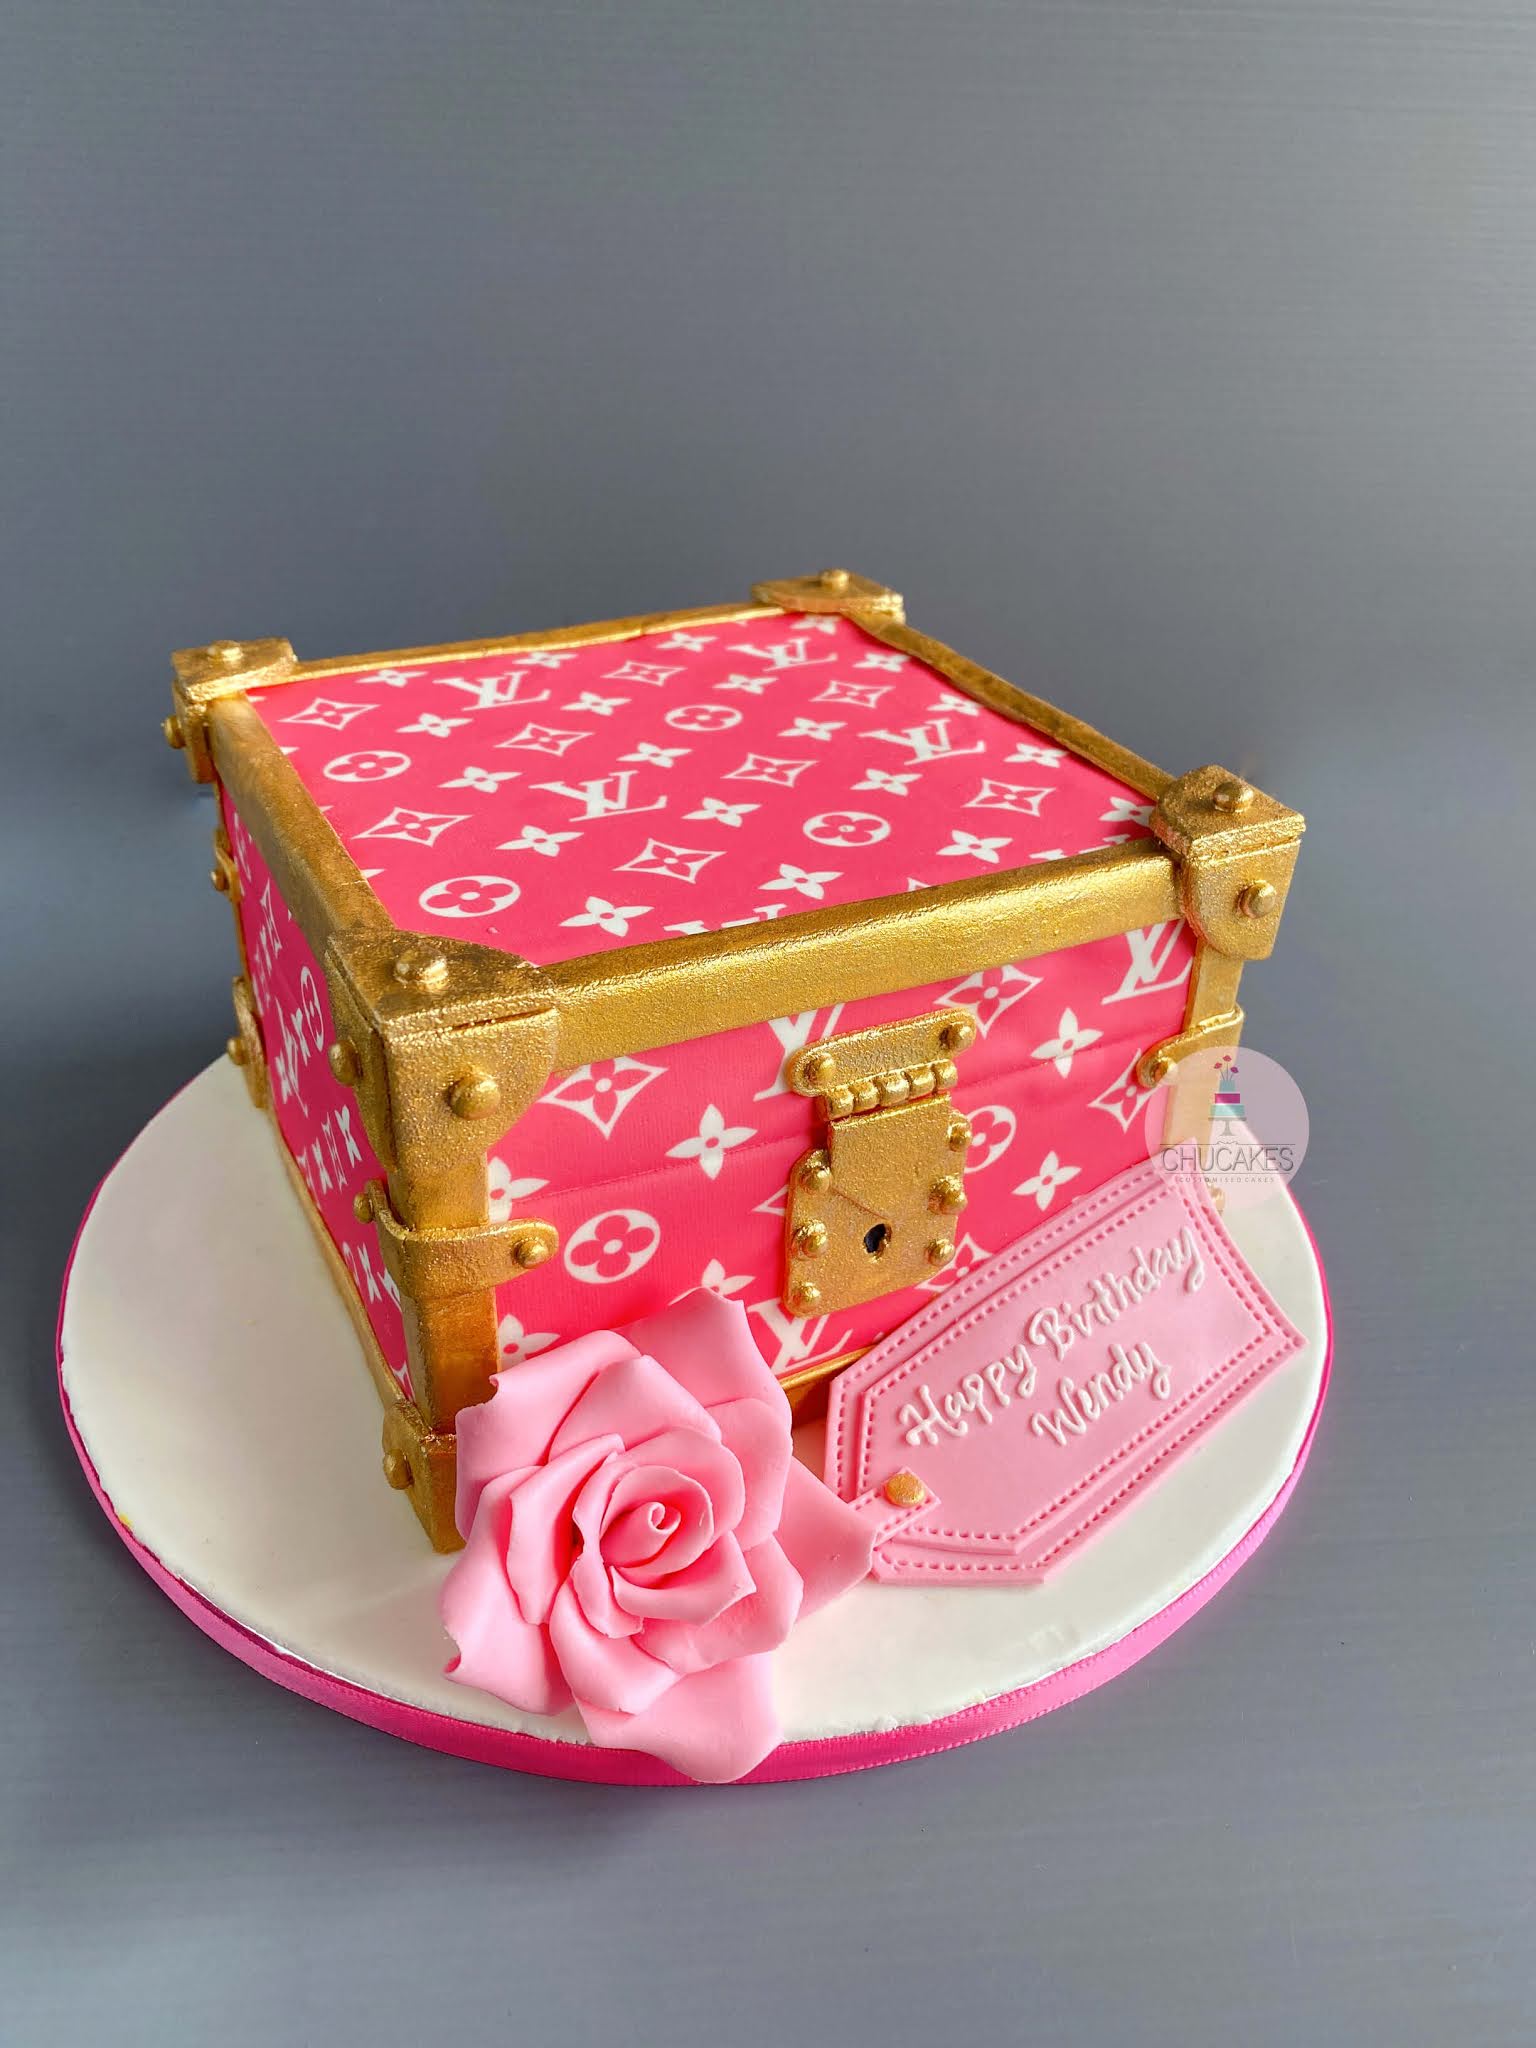 Louis Vitton Gift Box Cake  Louis vitton, Gift box cakes, Louis vuitton  monogram